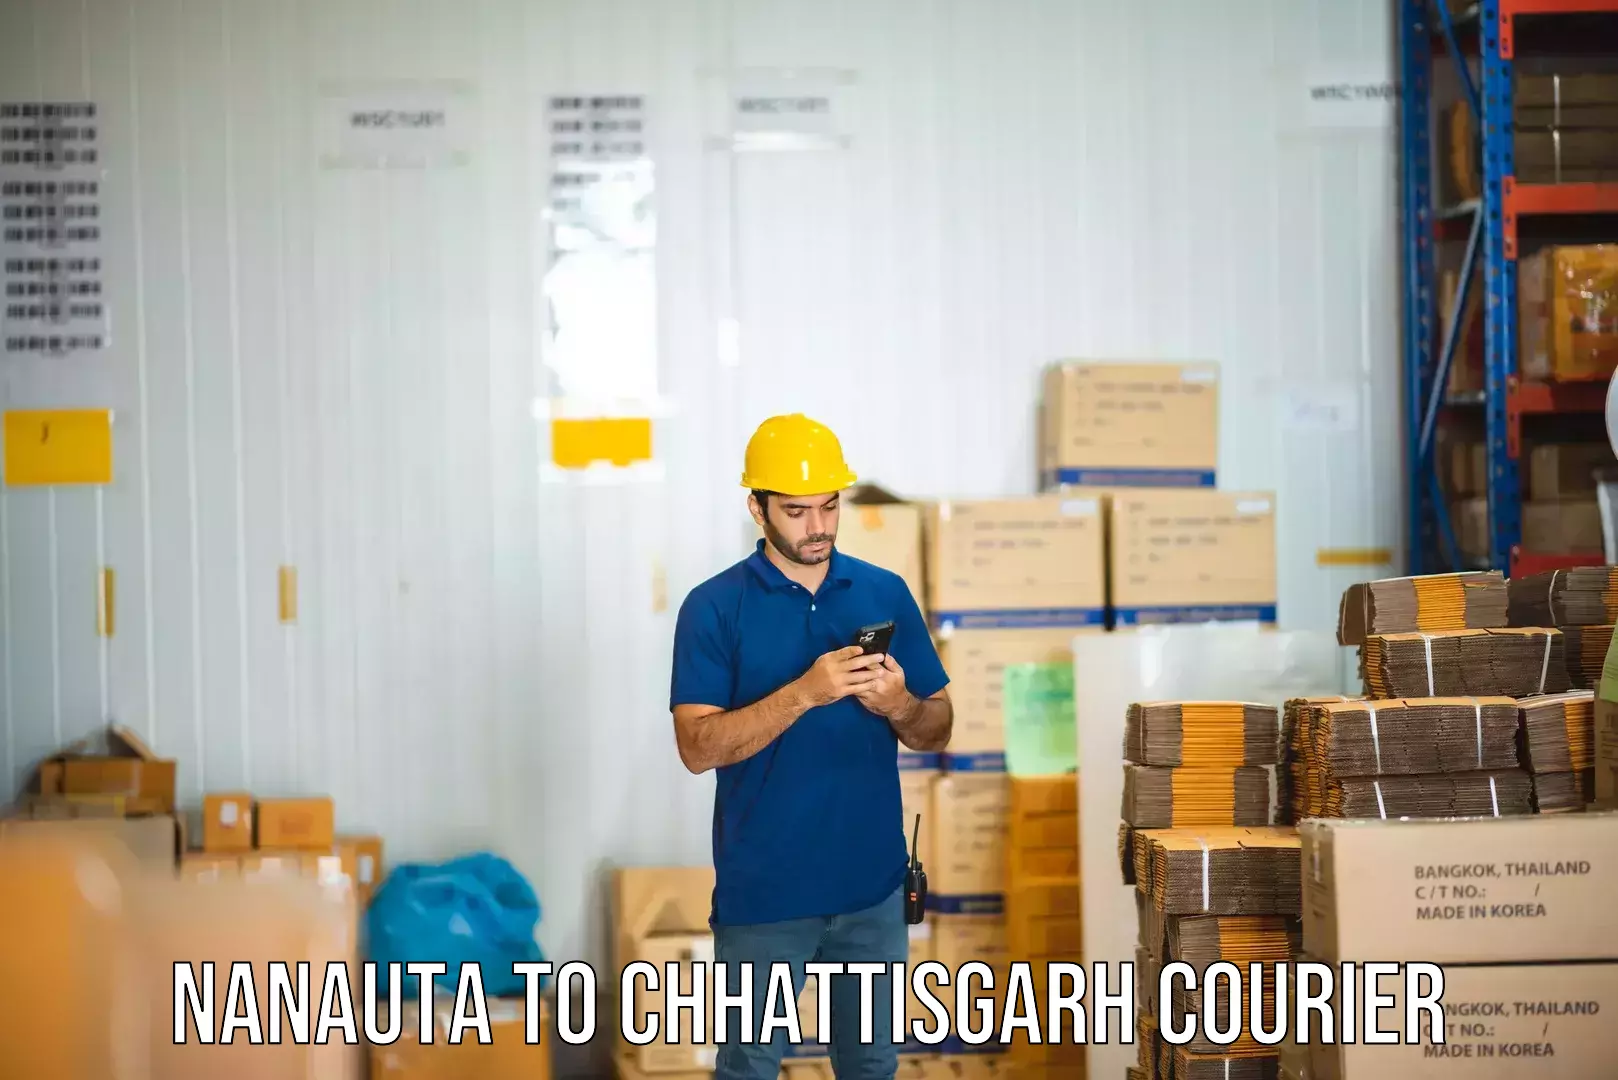 Efficient freight service in Nanauta to Bijapur Chhattisgarh